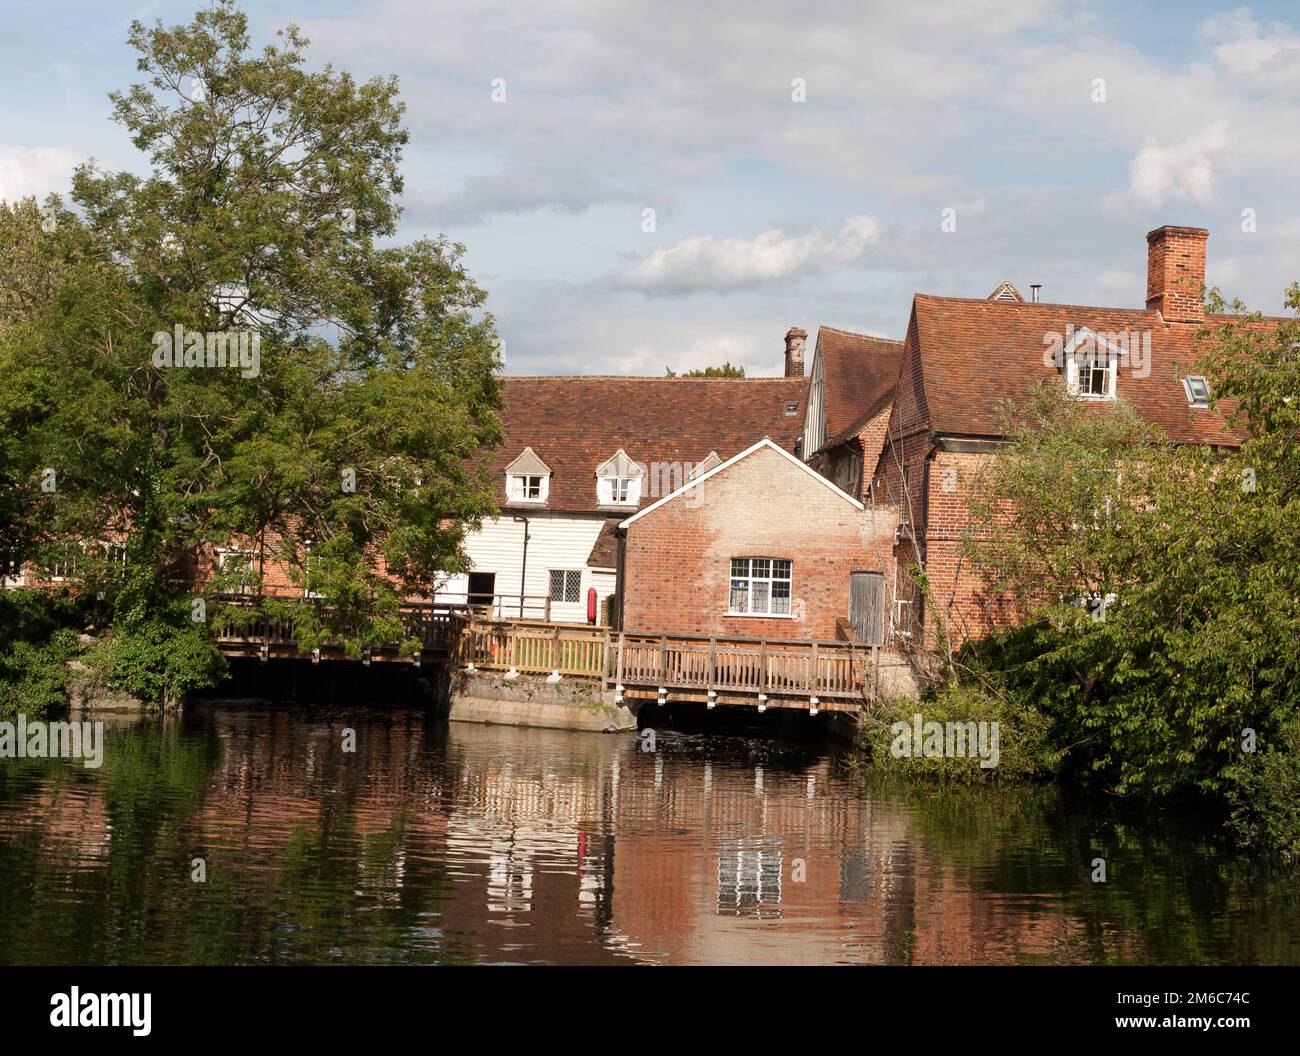 Wunderschöne alte historische Gebäude in england spiegeln sich im fließenden Fluss wider Stockfoto